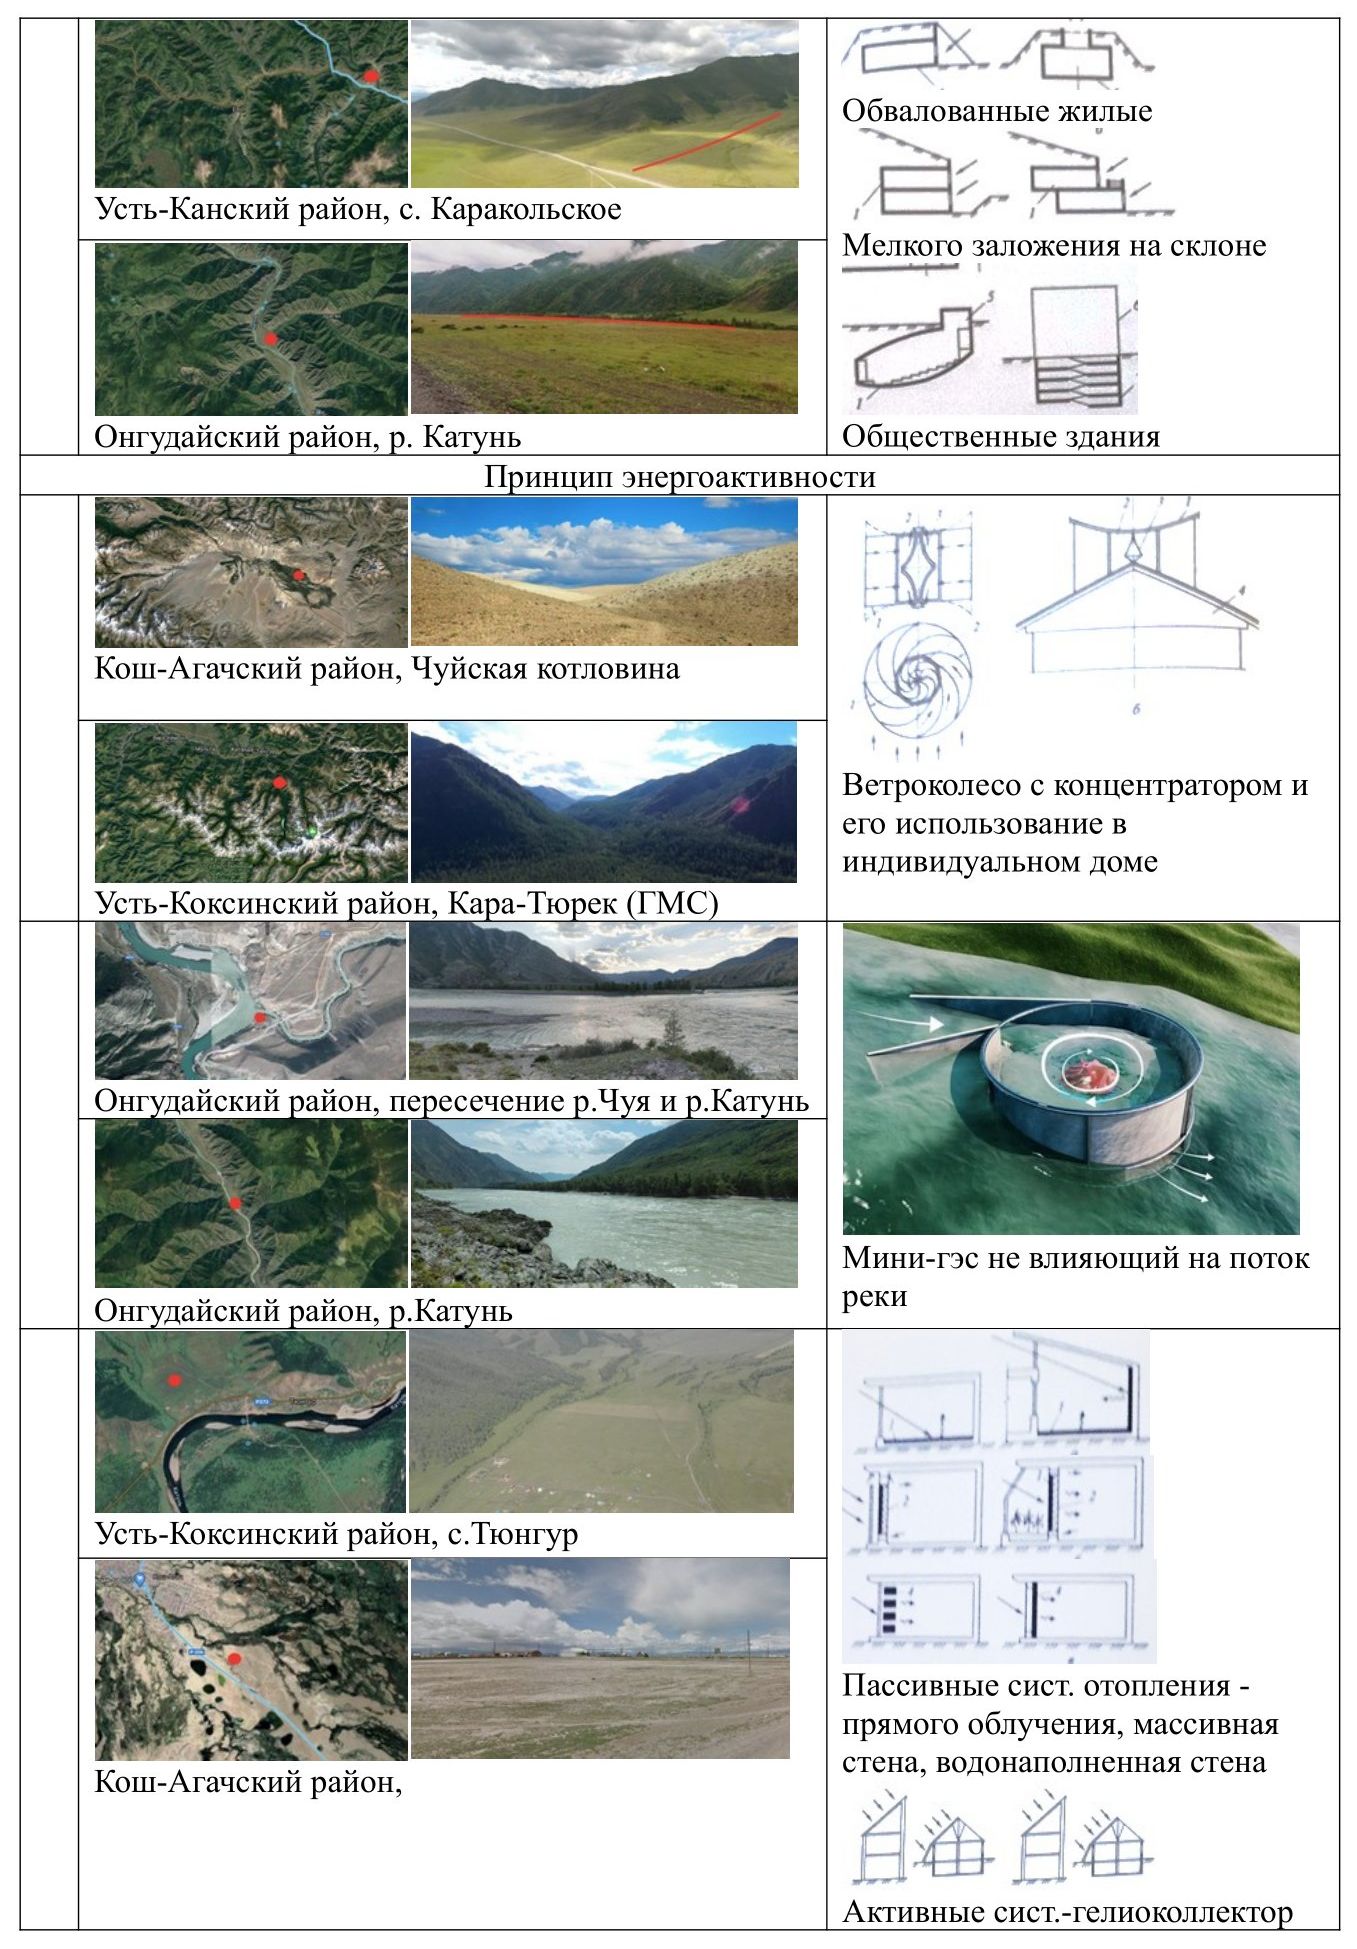 Таблица 2-2. Использование экологических принципов в Республике Алтай